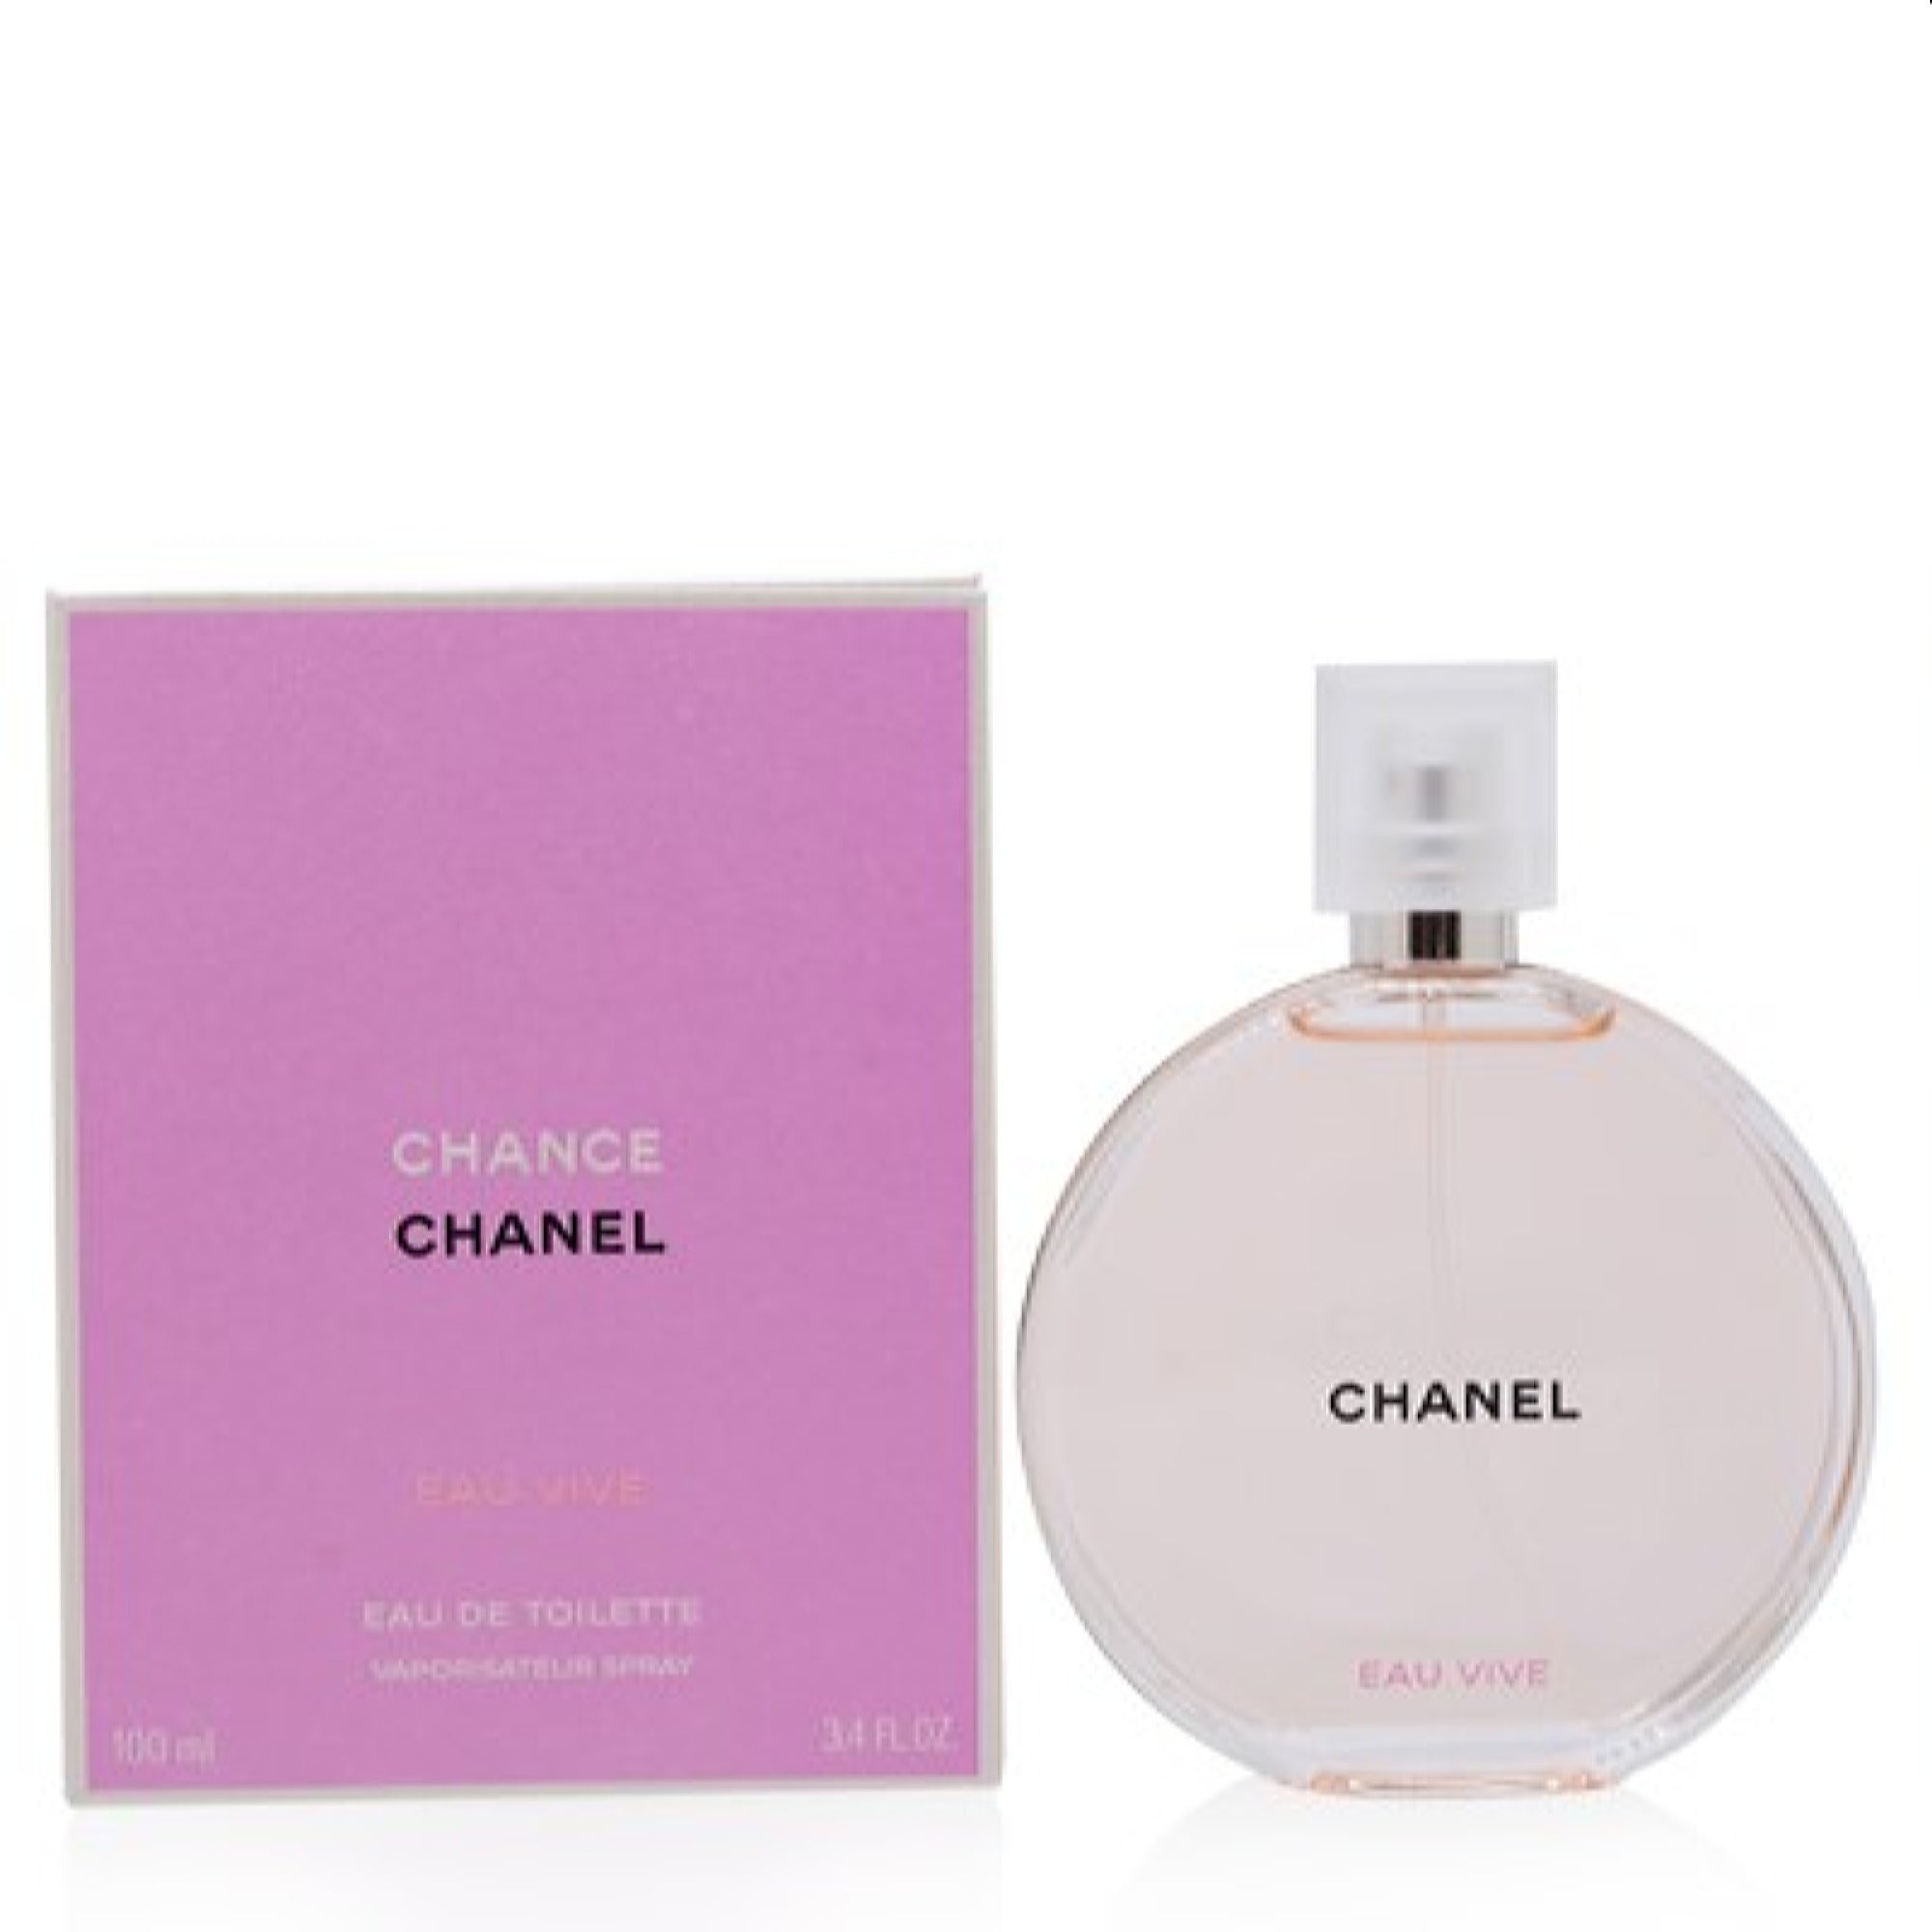 Chanel Women's Chance Eau Vive Chanel Edt Spray 3.4 Oz (100 Ml)   3145891265606